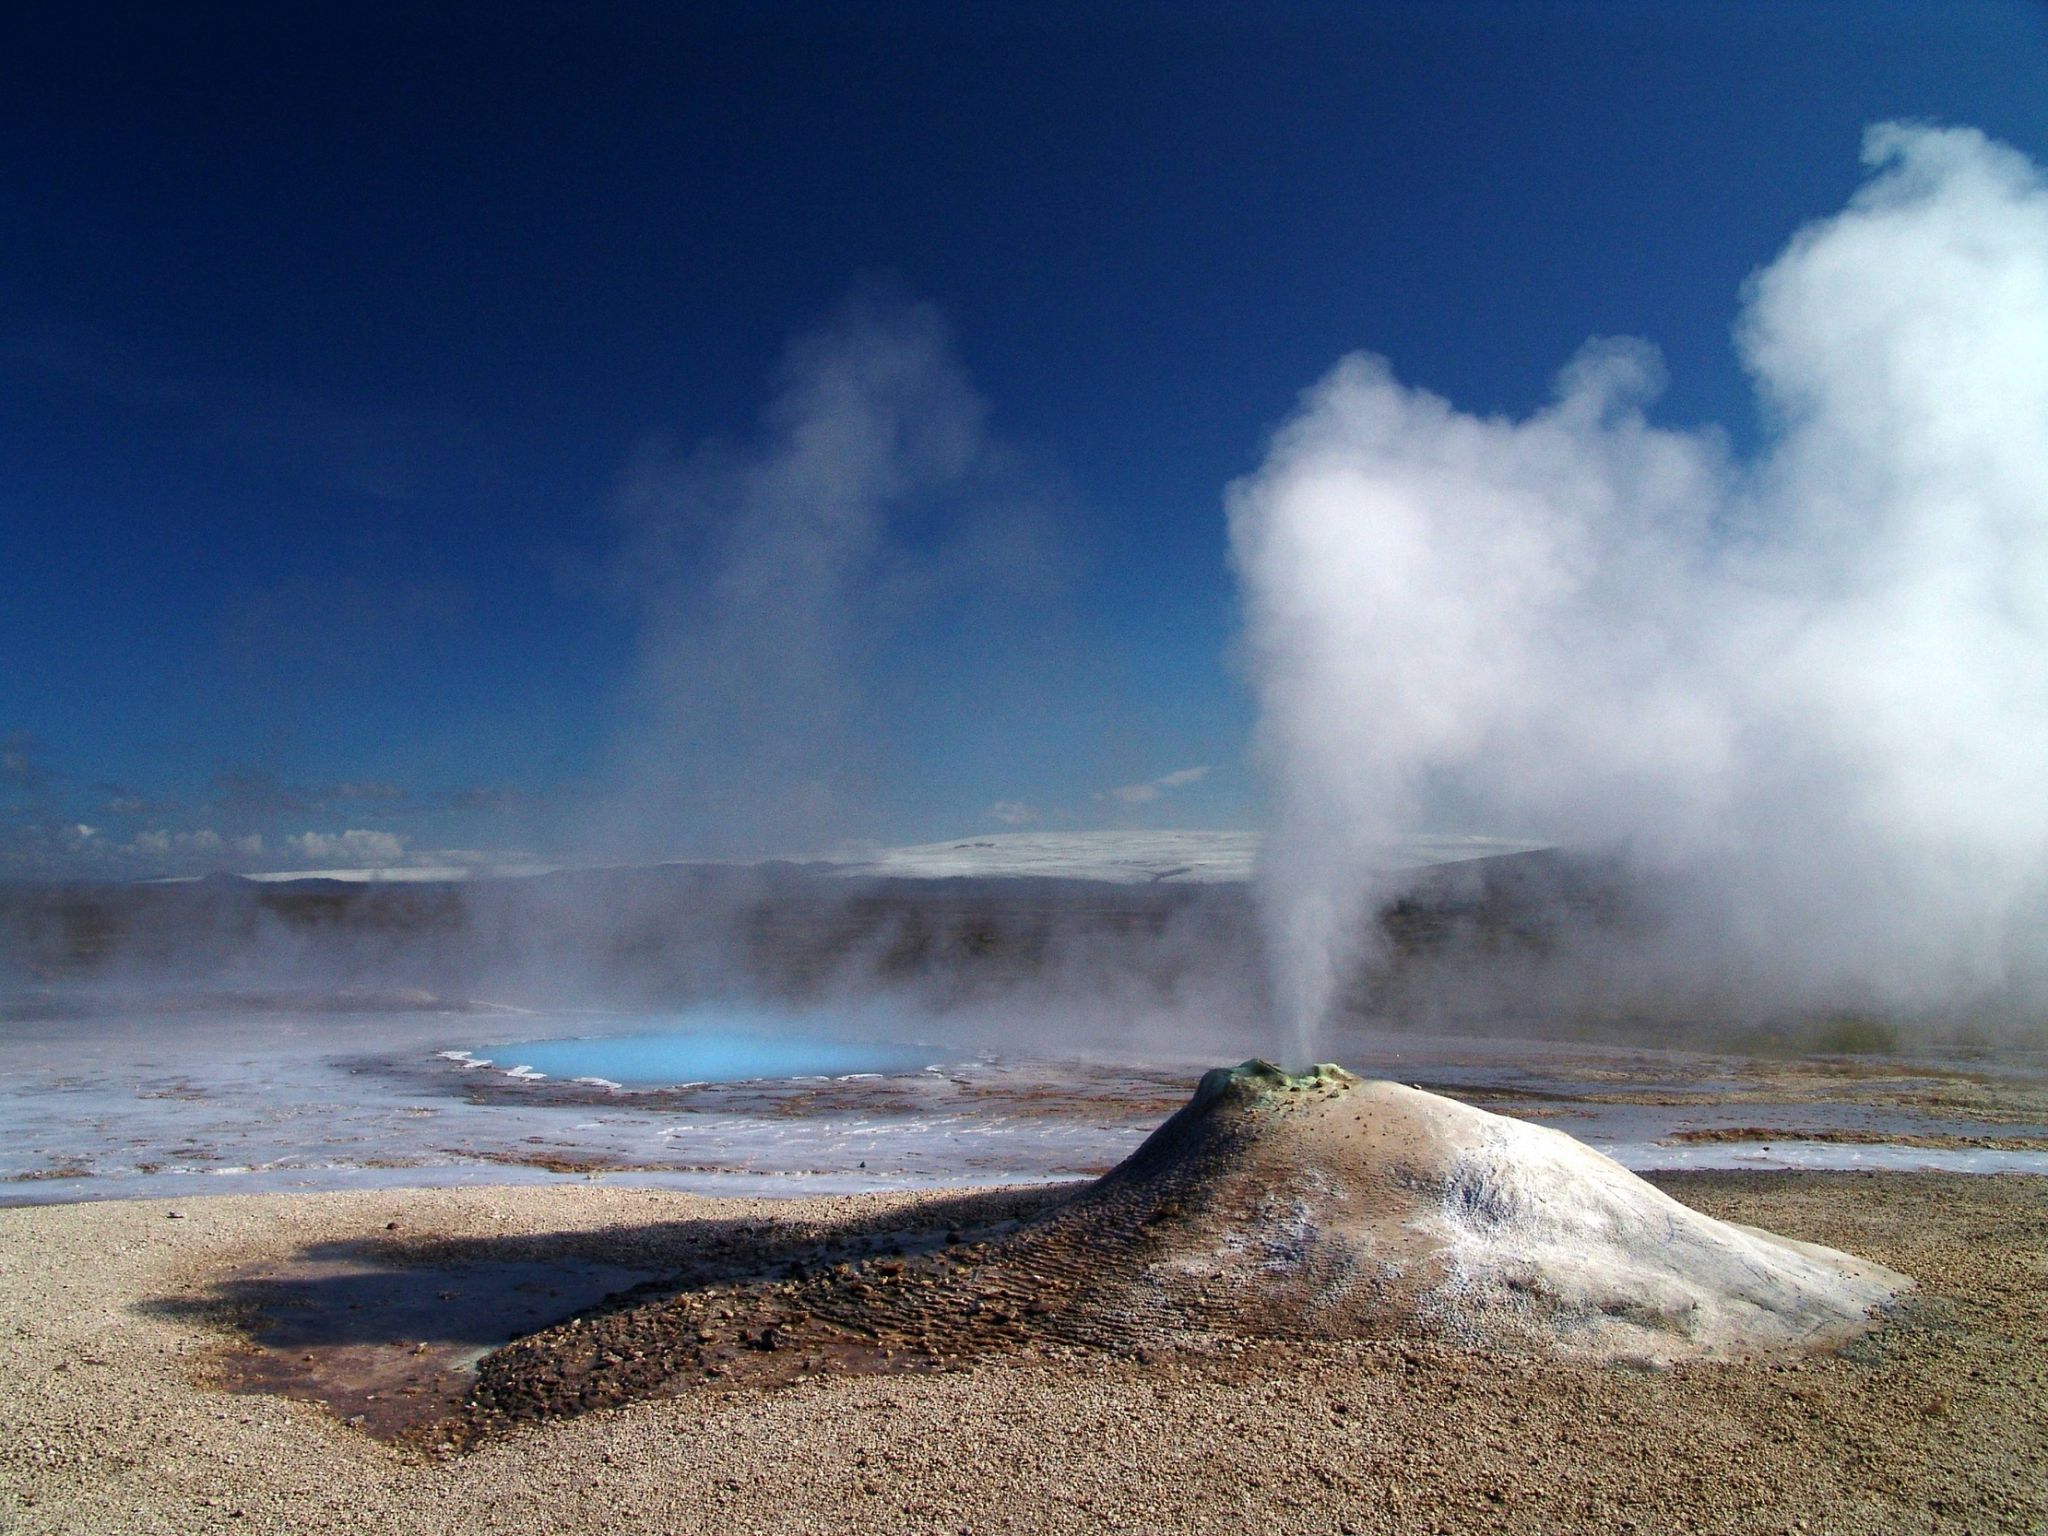 des geysers, sources d’eau chaude et de vapeur, Islande